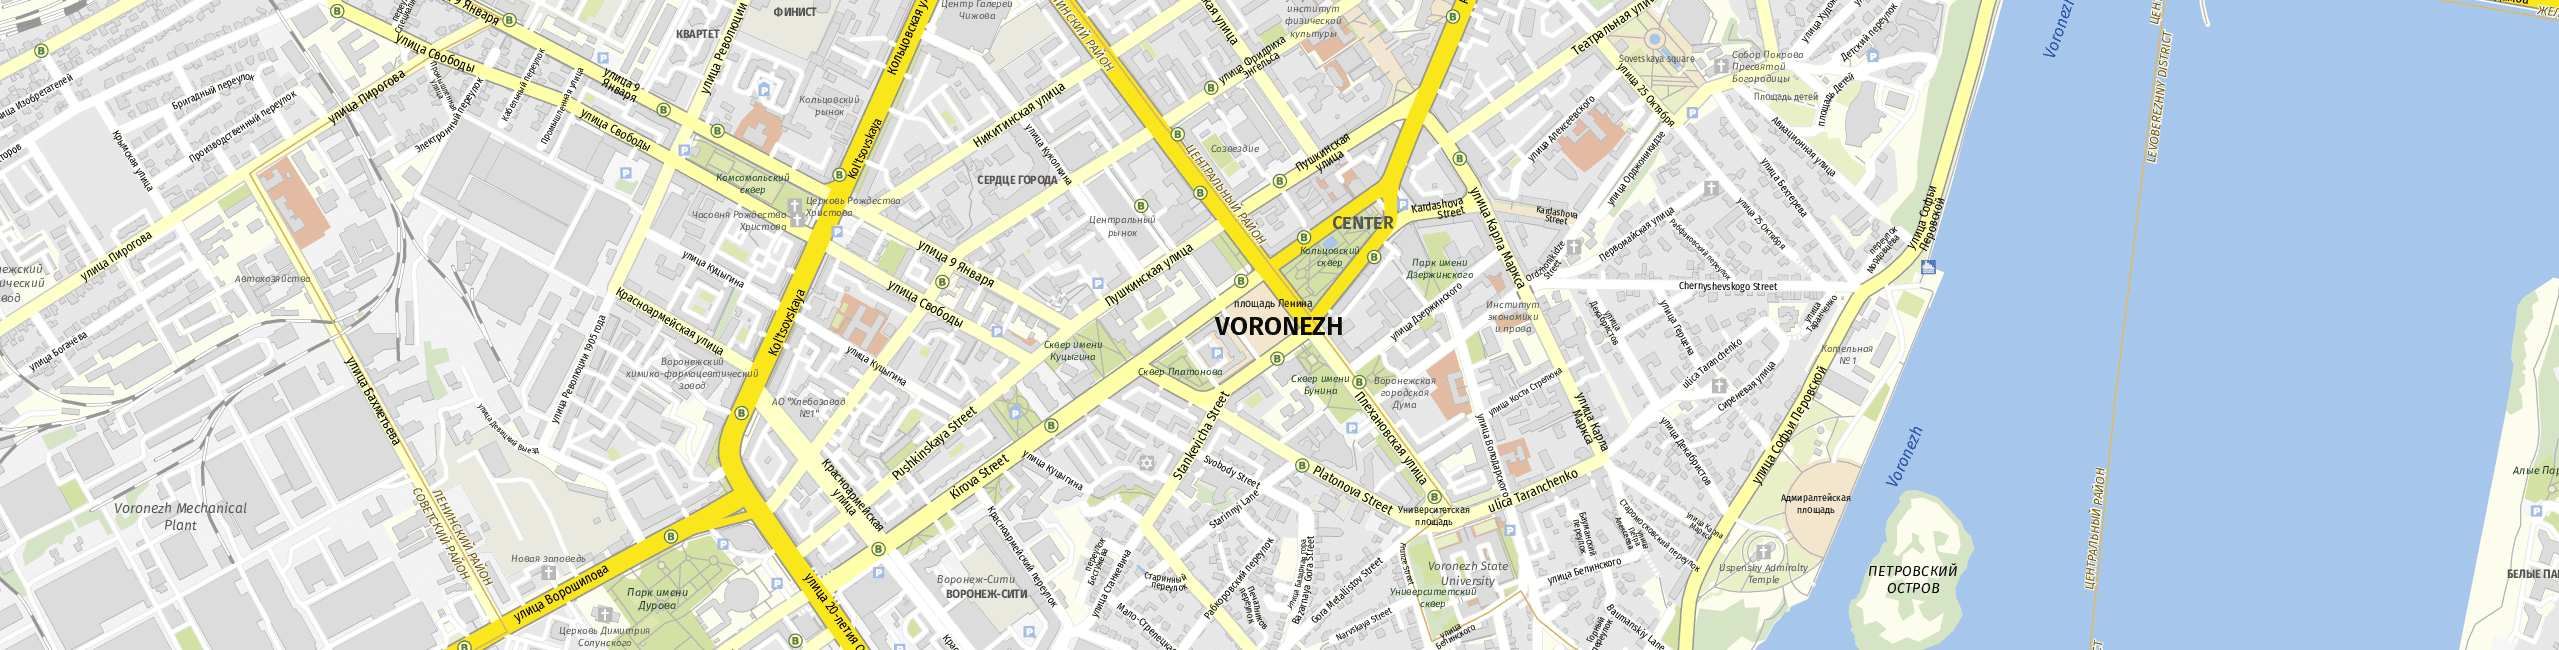 Stadtplan Woronesch zum Downloaden.